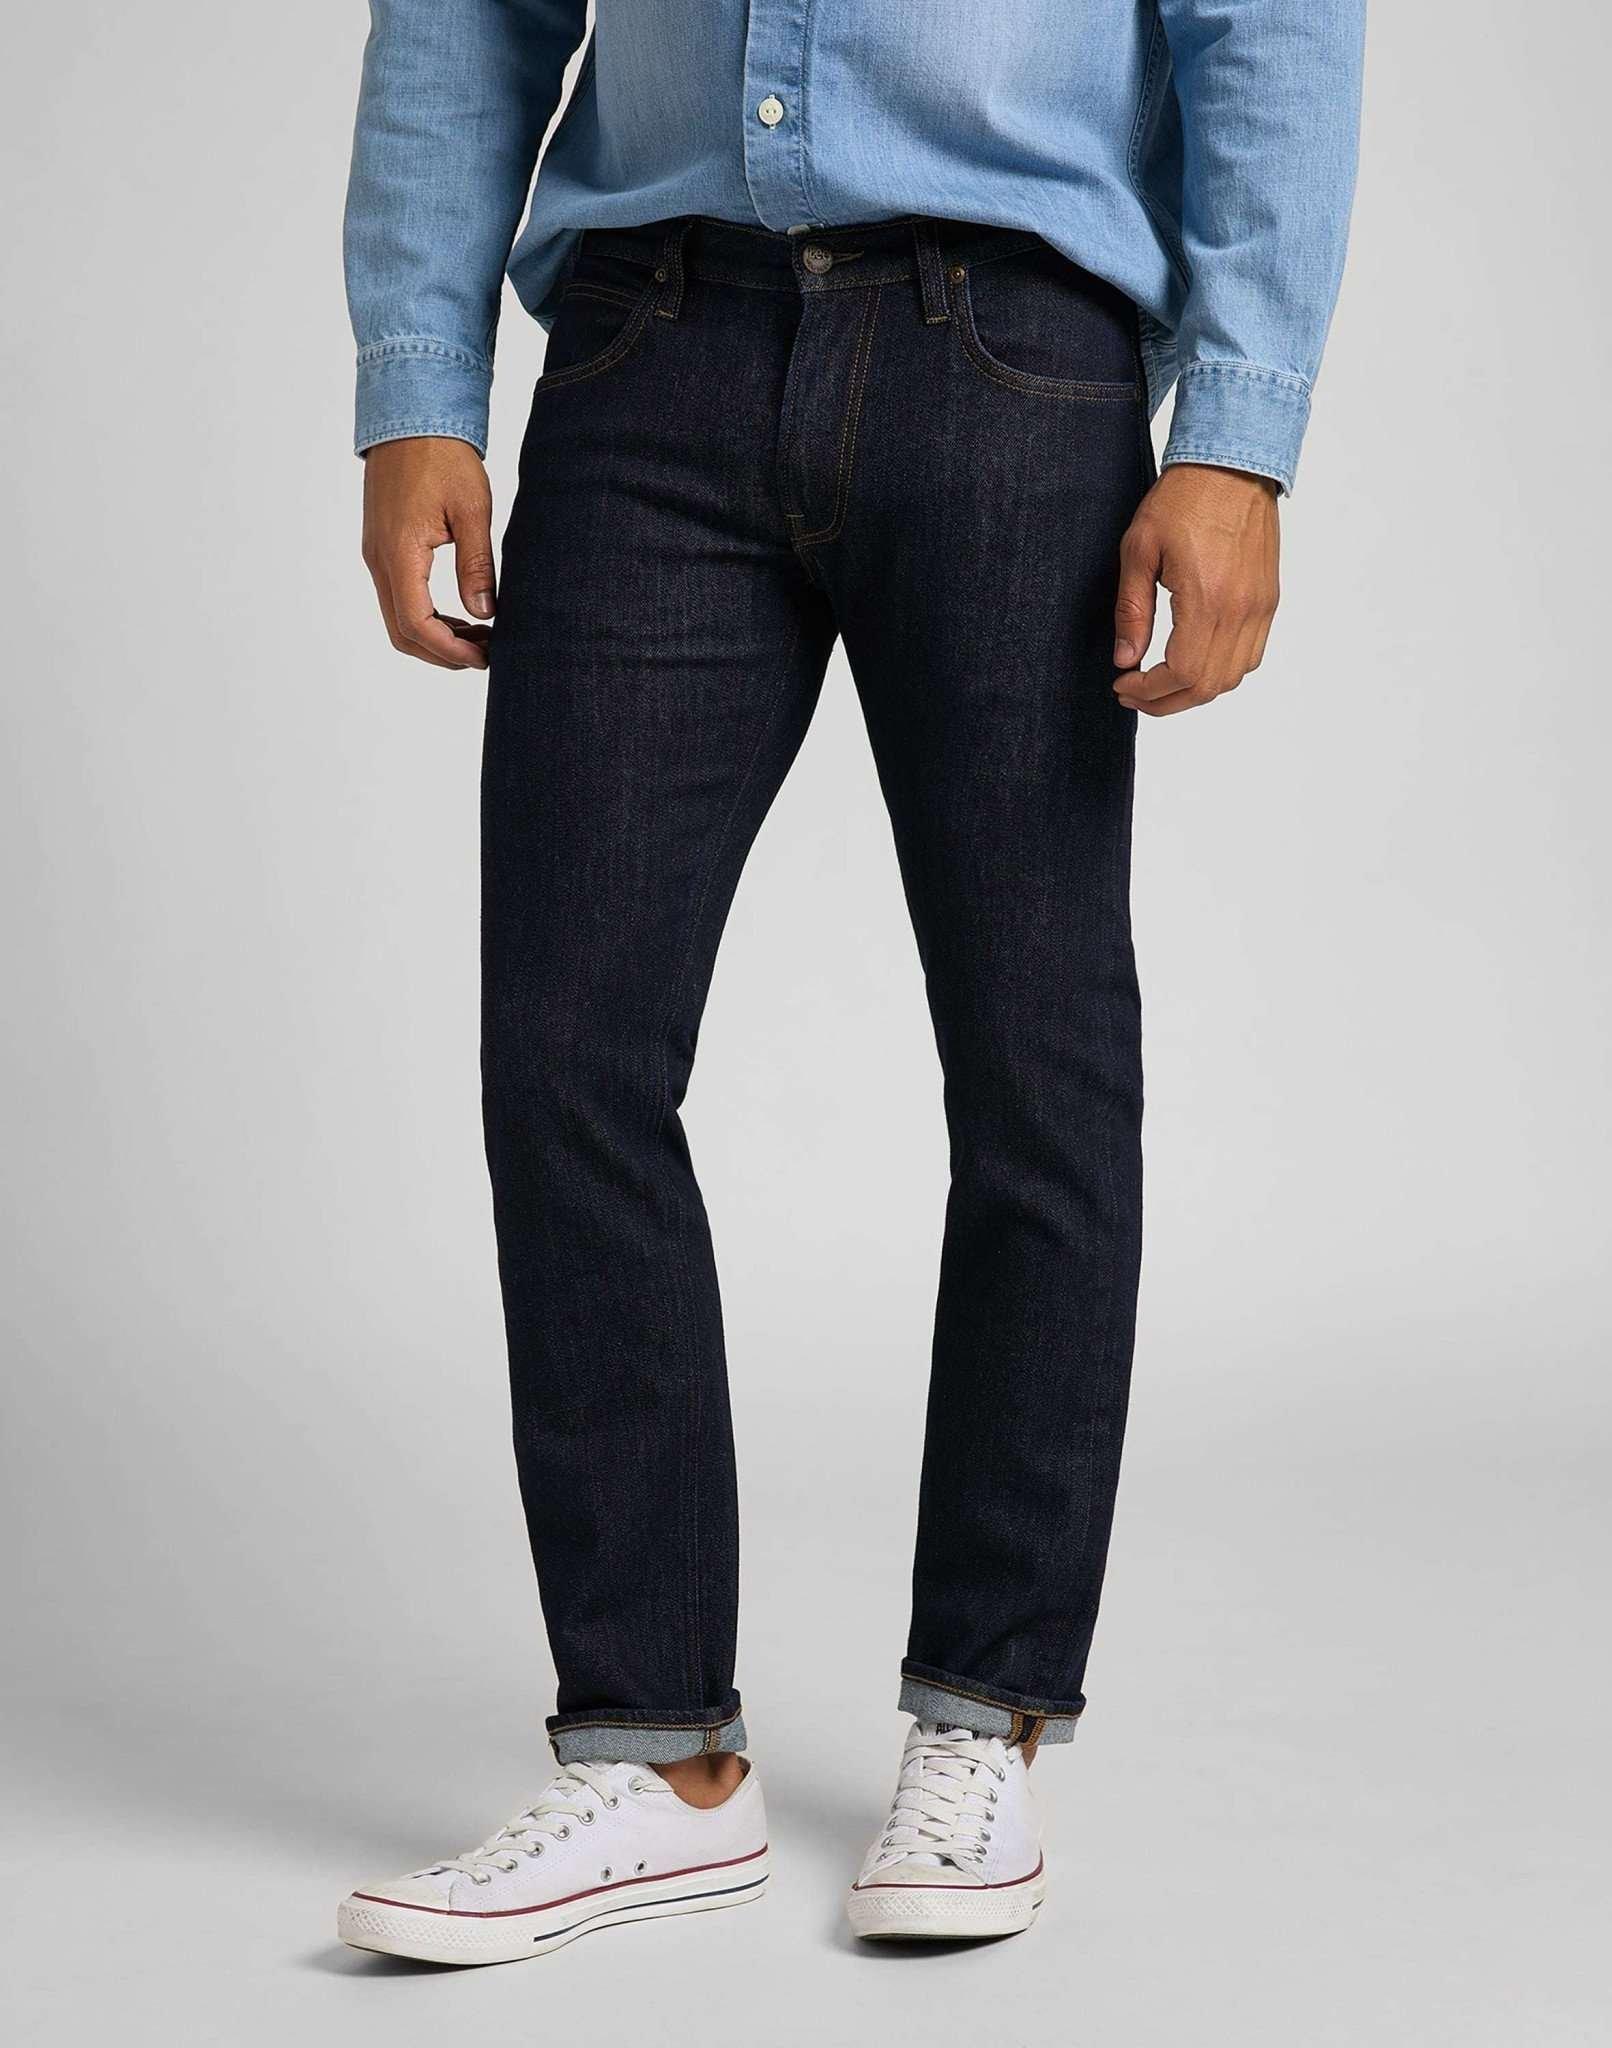 Jeans Straight Leg Daren Herren Blau Denim L32/W32 von Lee